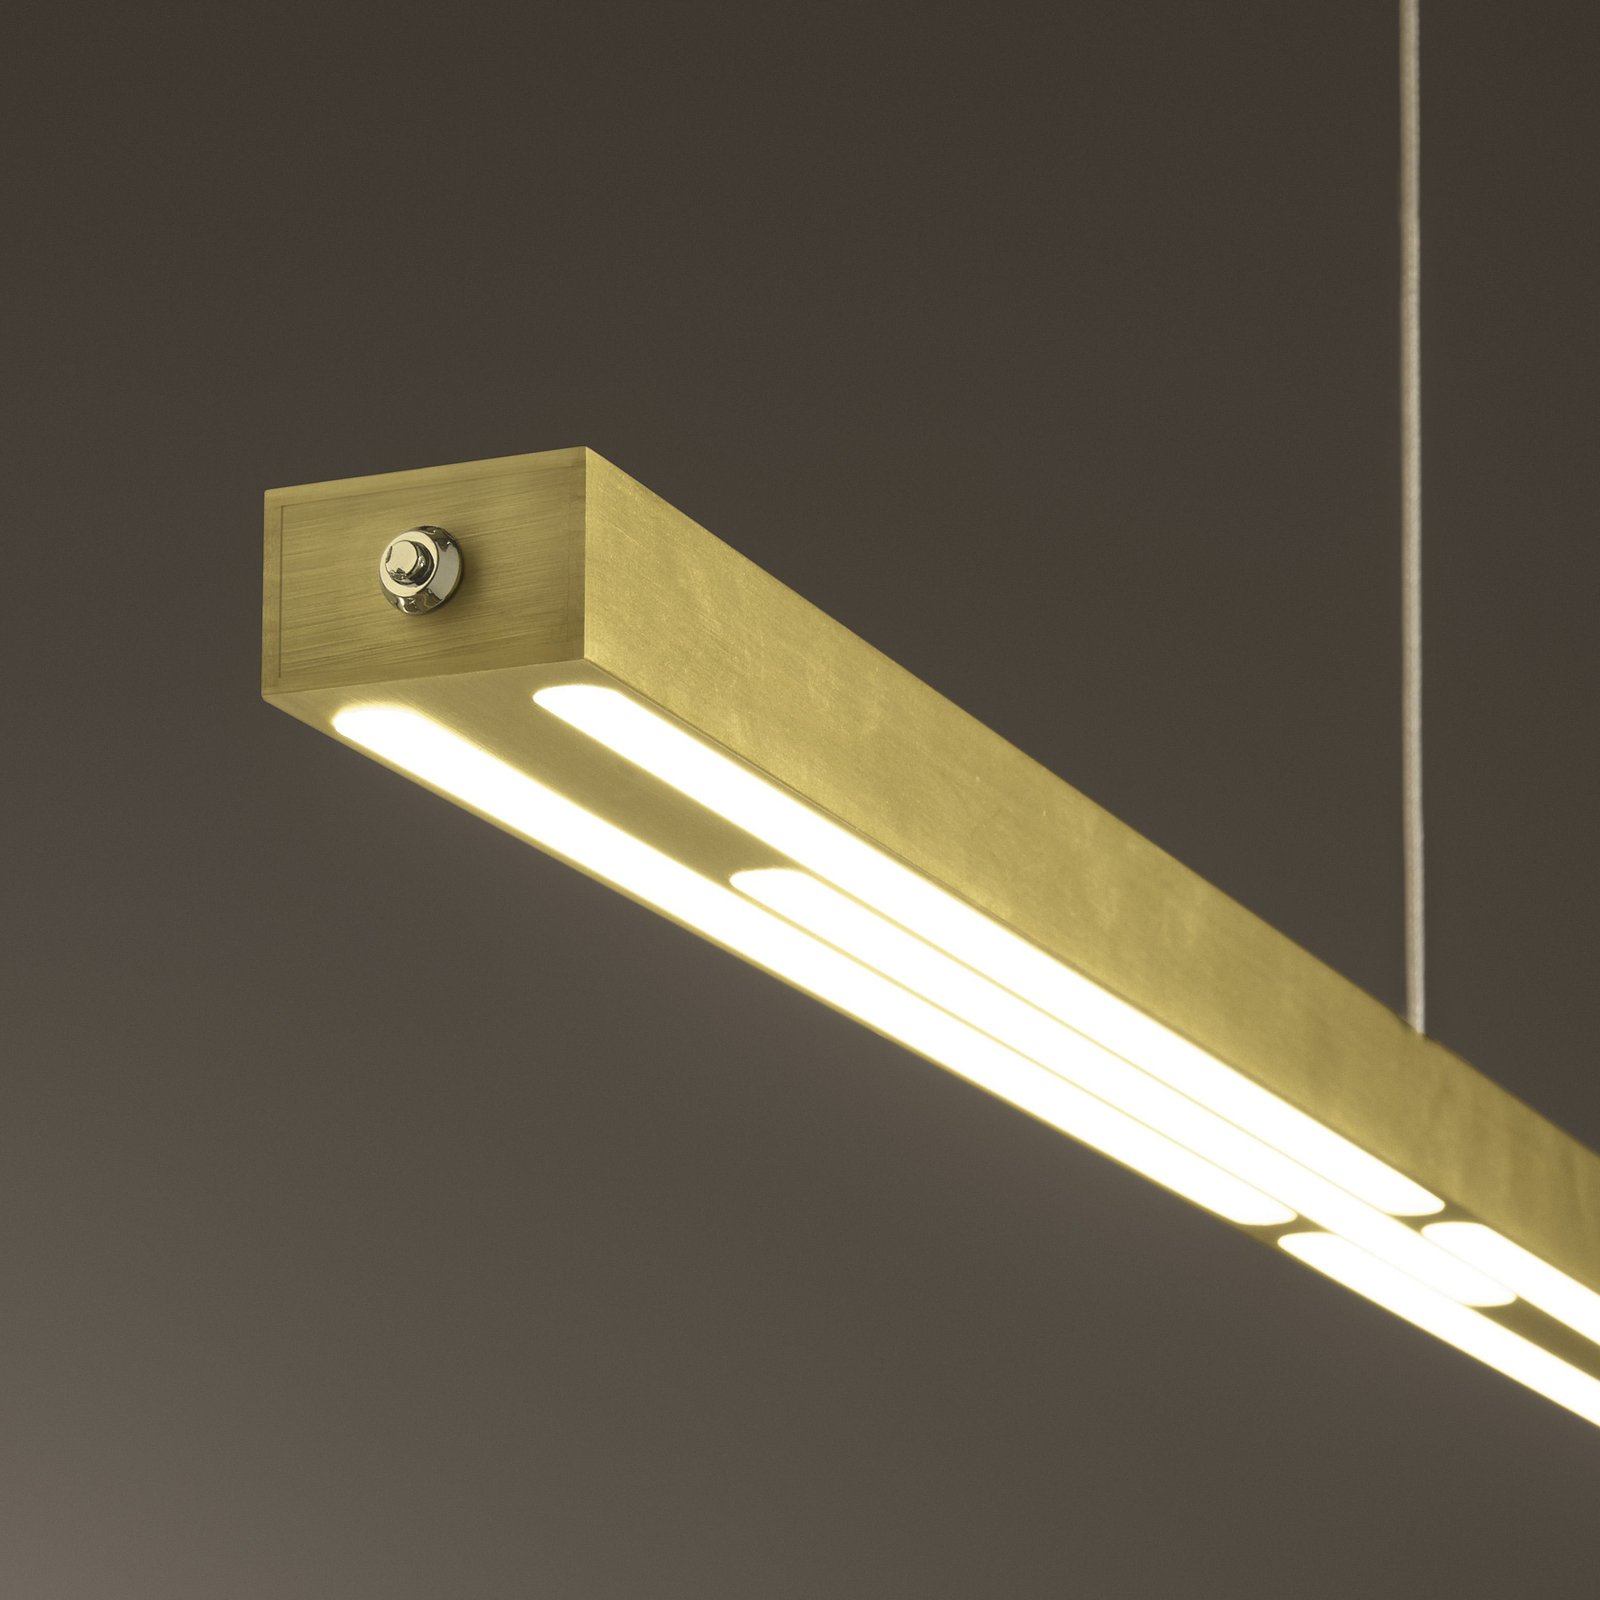 Lampada a sospensione Ling LED, ottone, uplight e downlight, dimmerabile